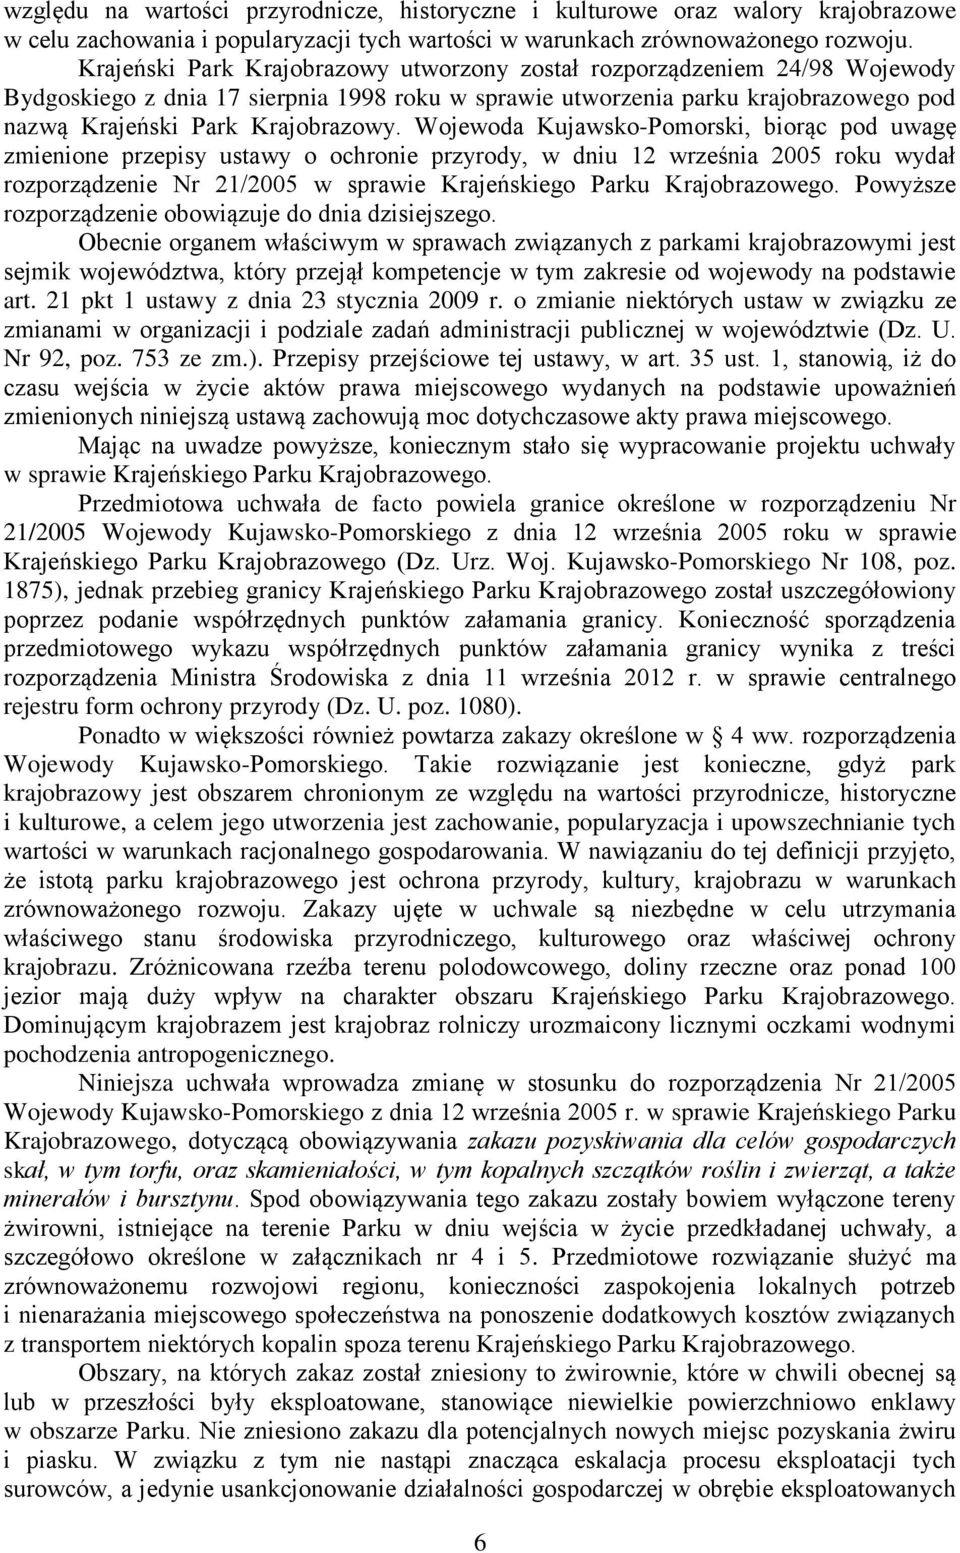 Wojewoda Kujawsko-Pomorski, biorąc pod uwagę zmienione przepisy ustawy o ochronie przyrody, w dniu 12 września 2005 roku wydał rozporządzenie Nr 21/2005 w sprawie Krajeńskiego Parku Krajobrazowego.